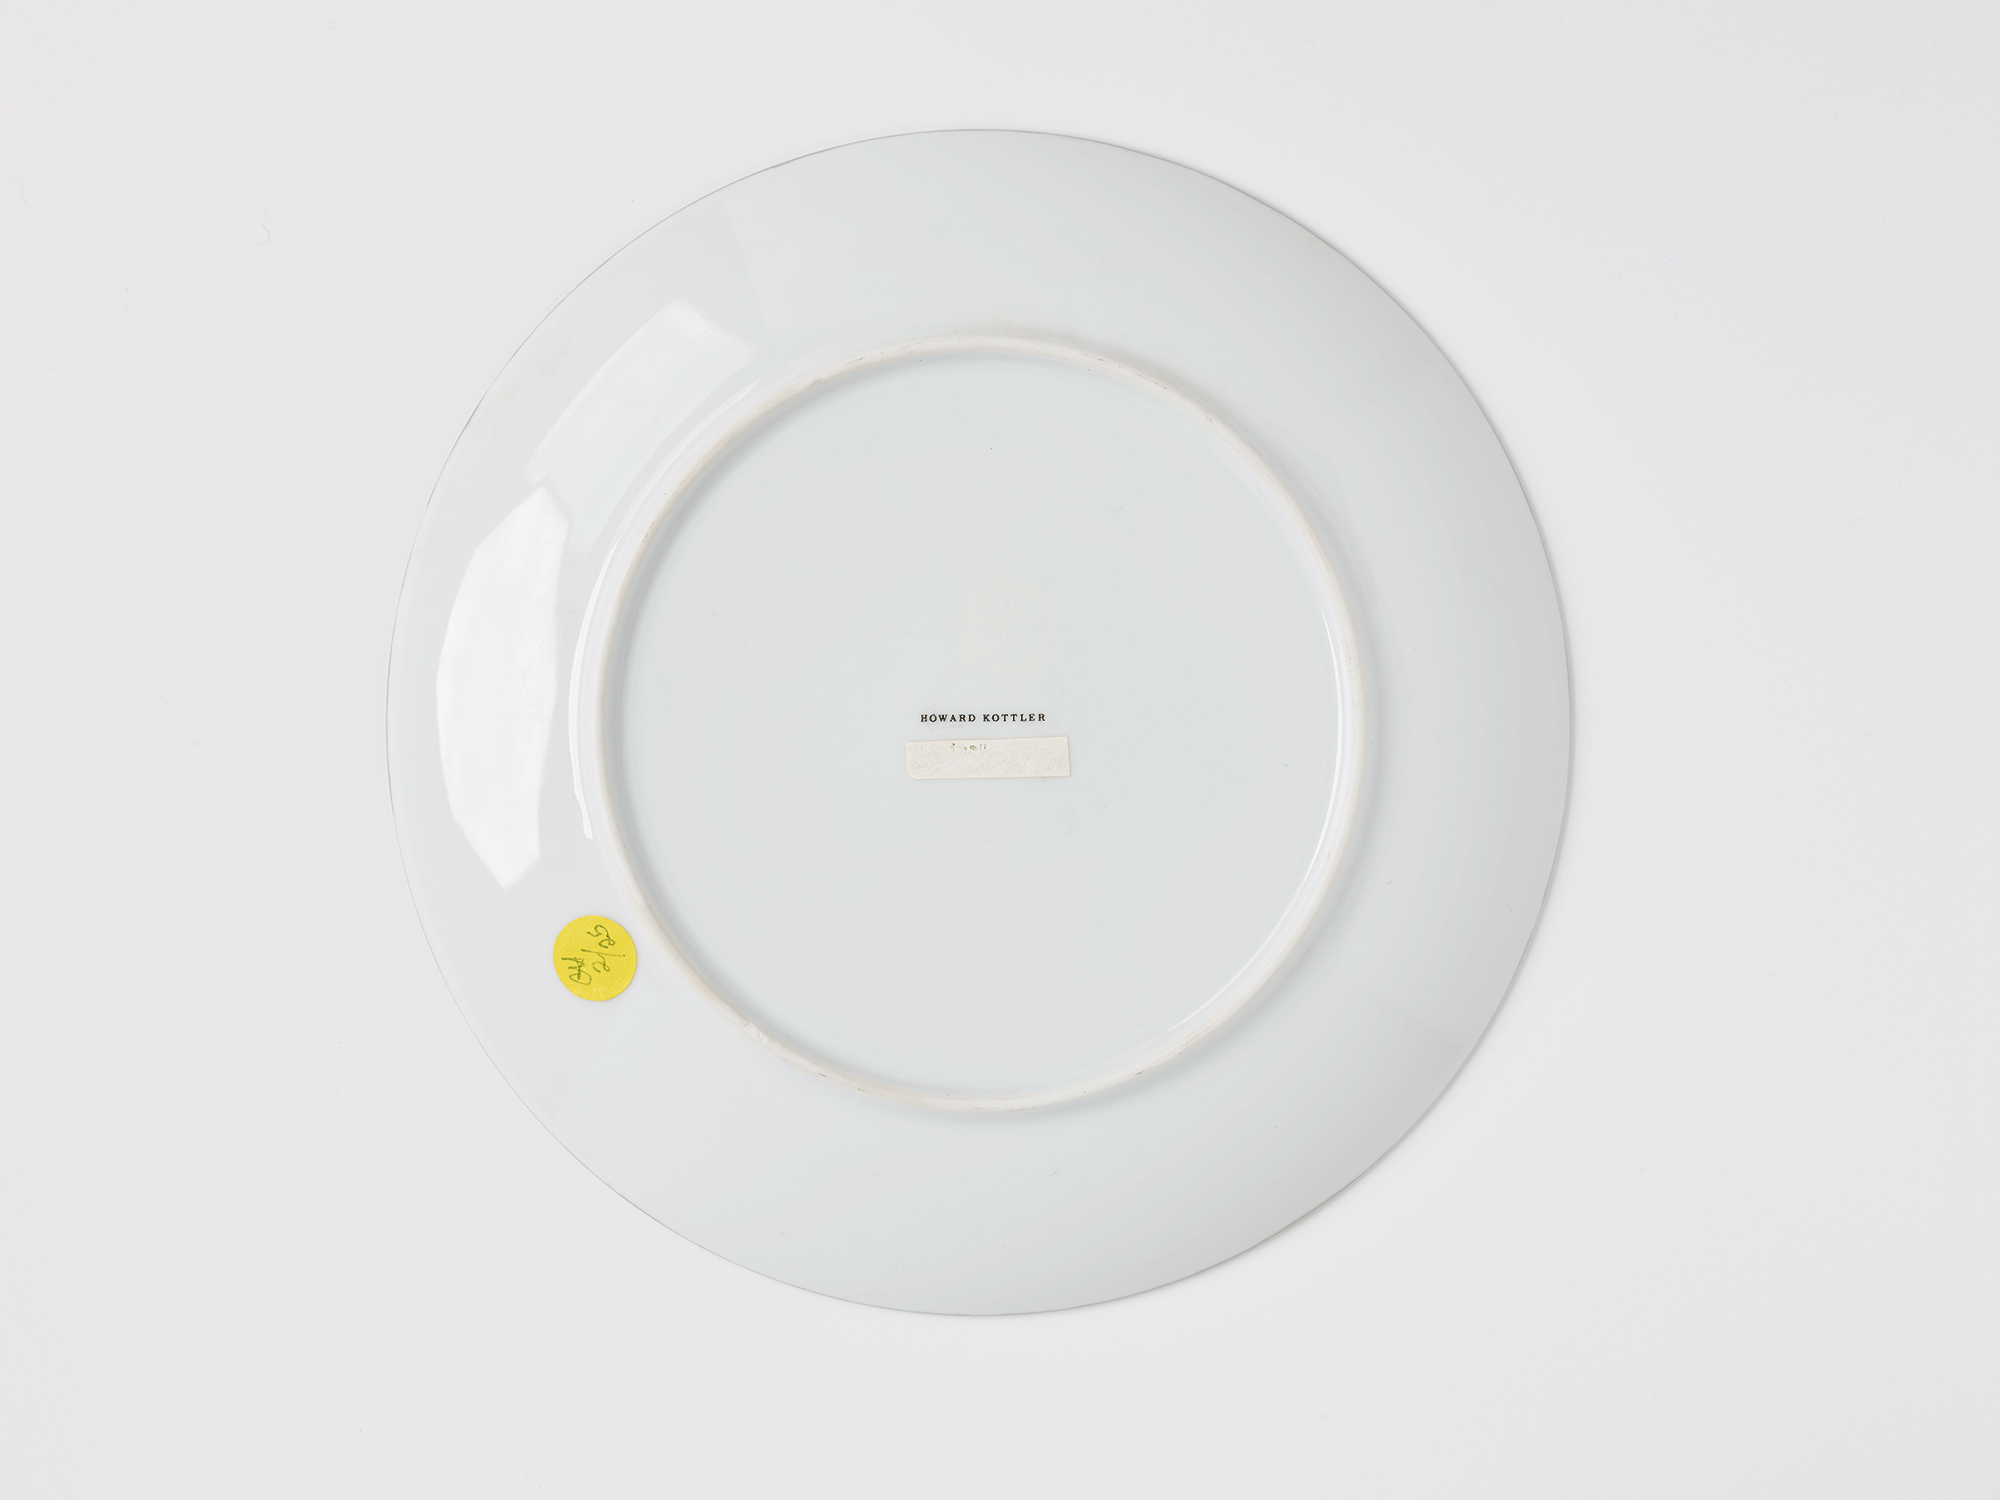 Underside of plate. Name printed in the center reads “Howard Kottler.”